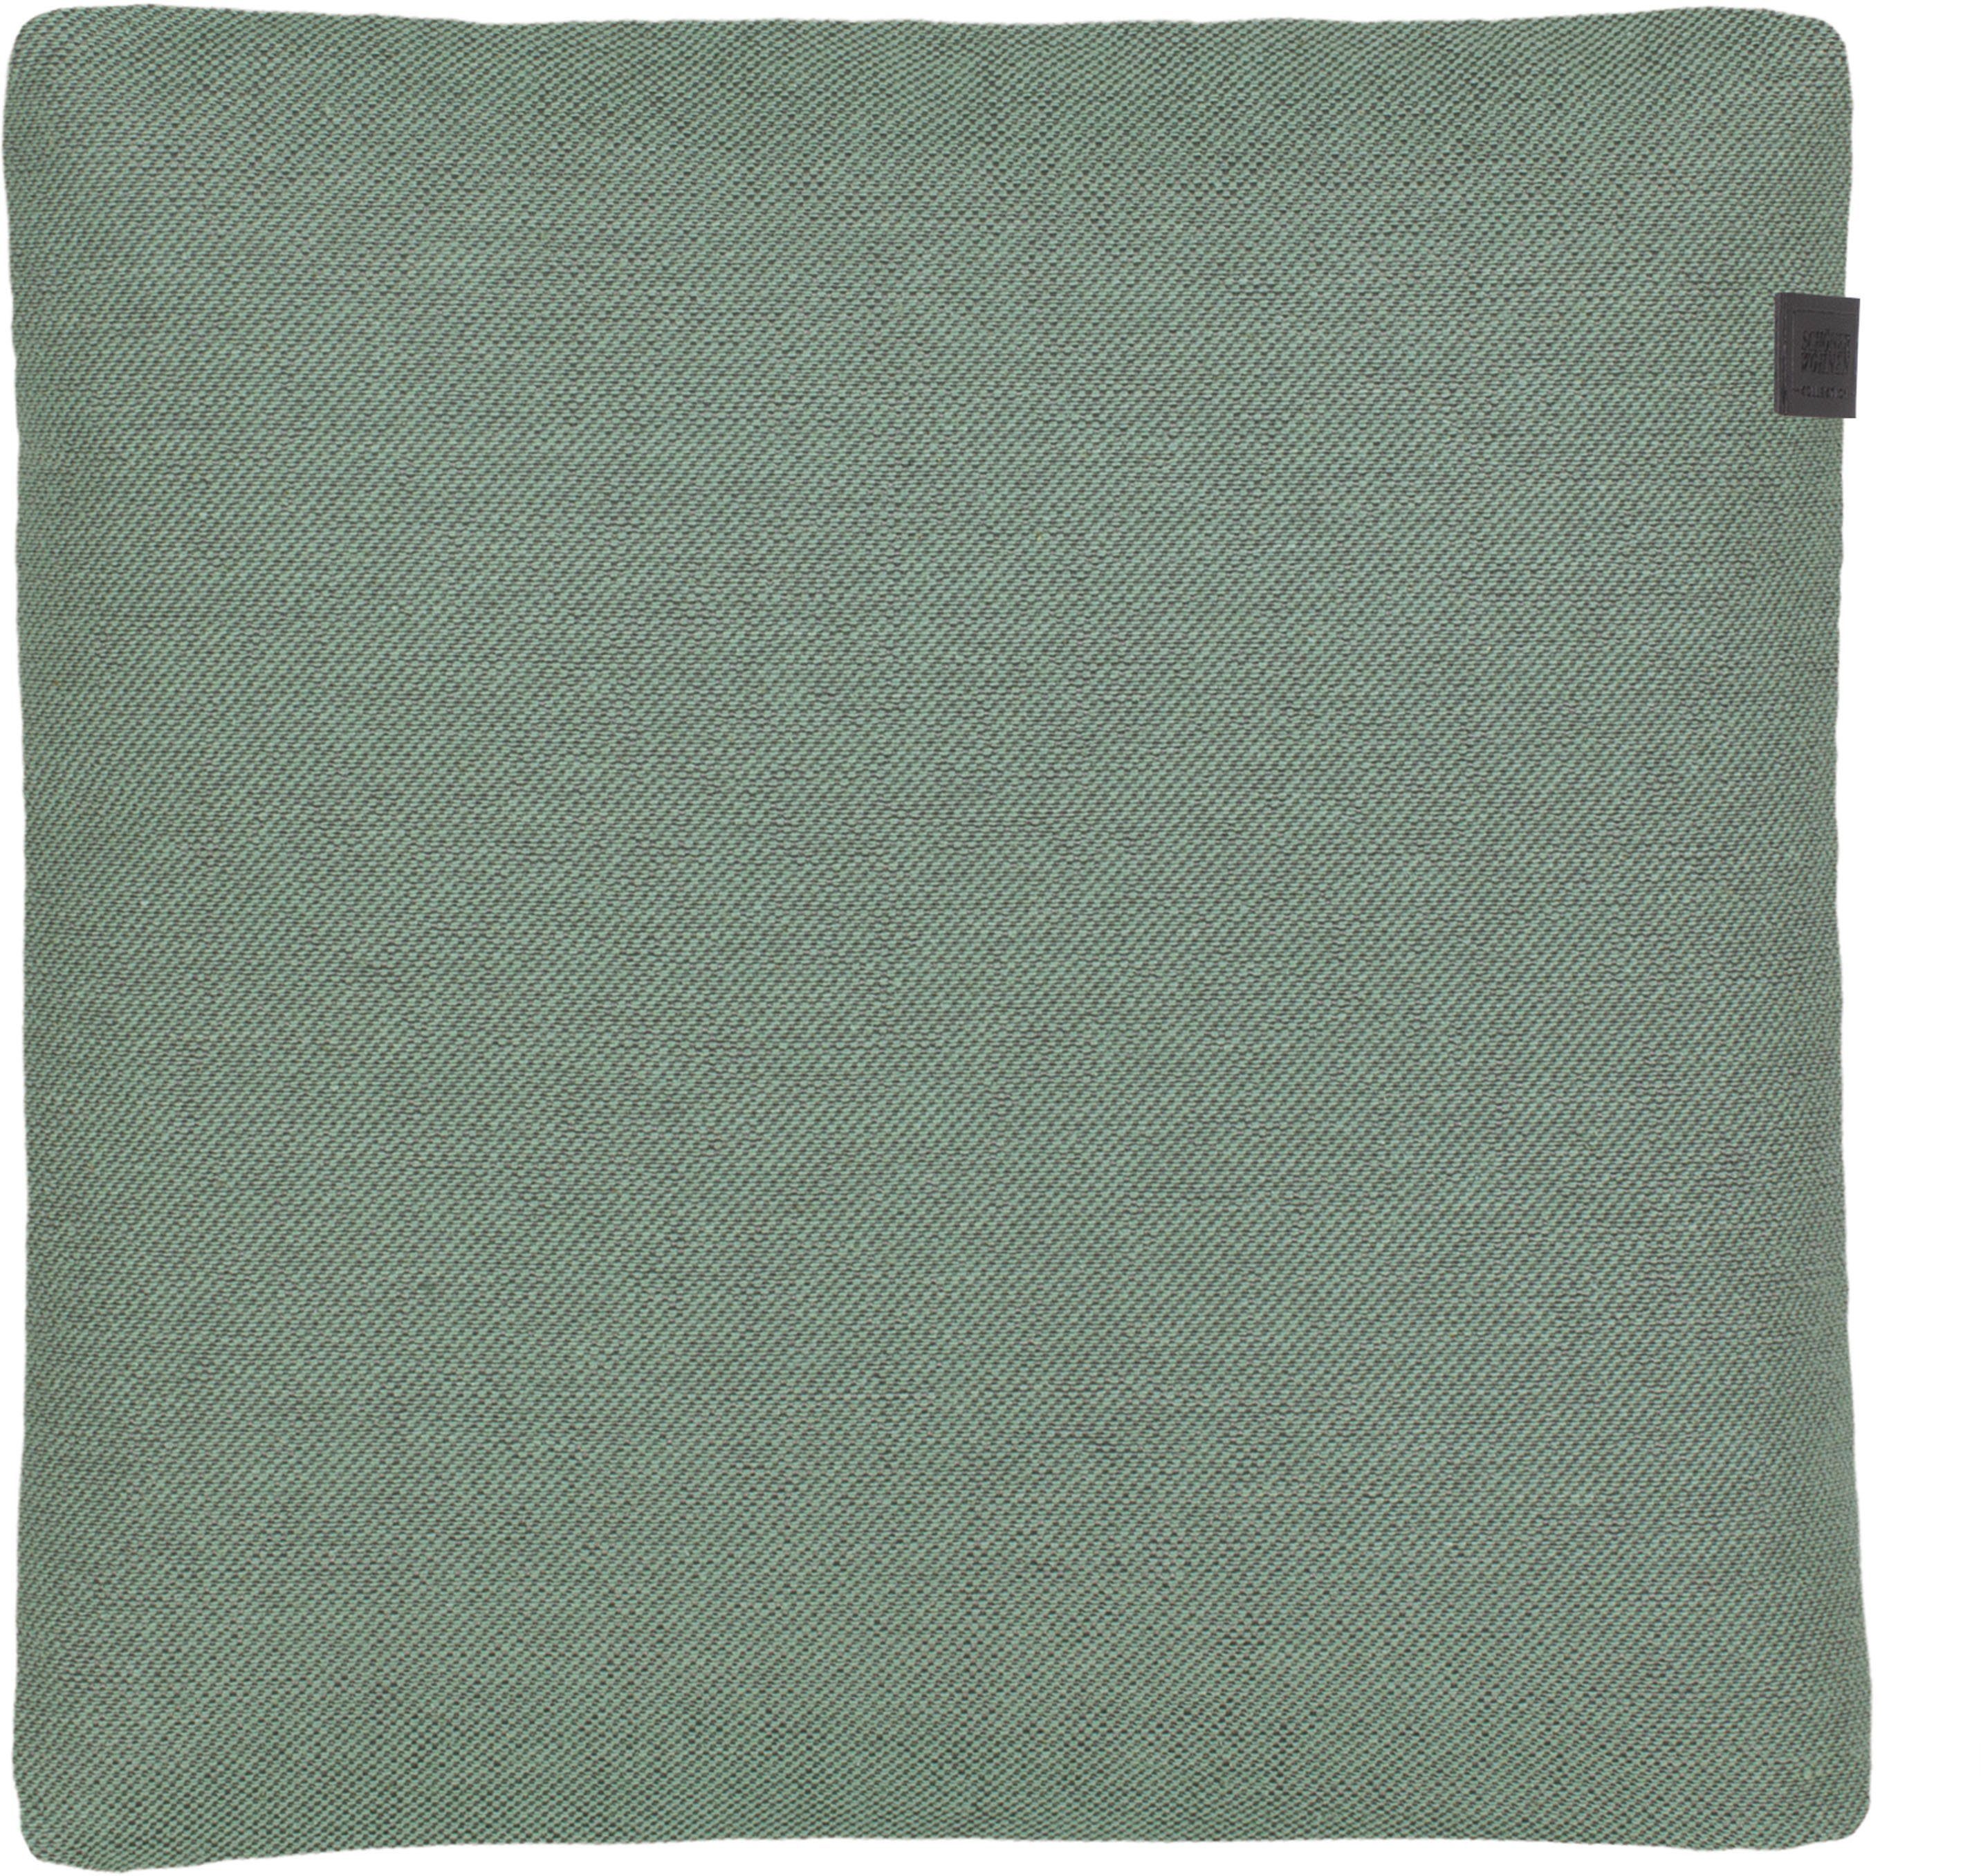 SCHÖNER WOHNEN-Kollektion Dekokissen Solo, 38x38 cm hellgrün | Dekokissen